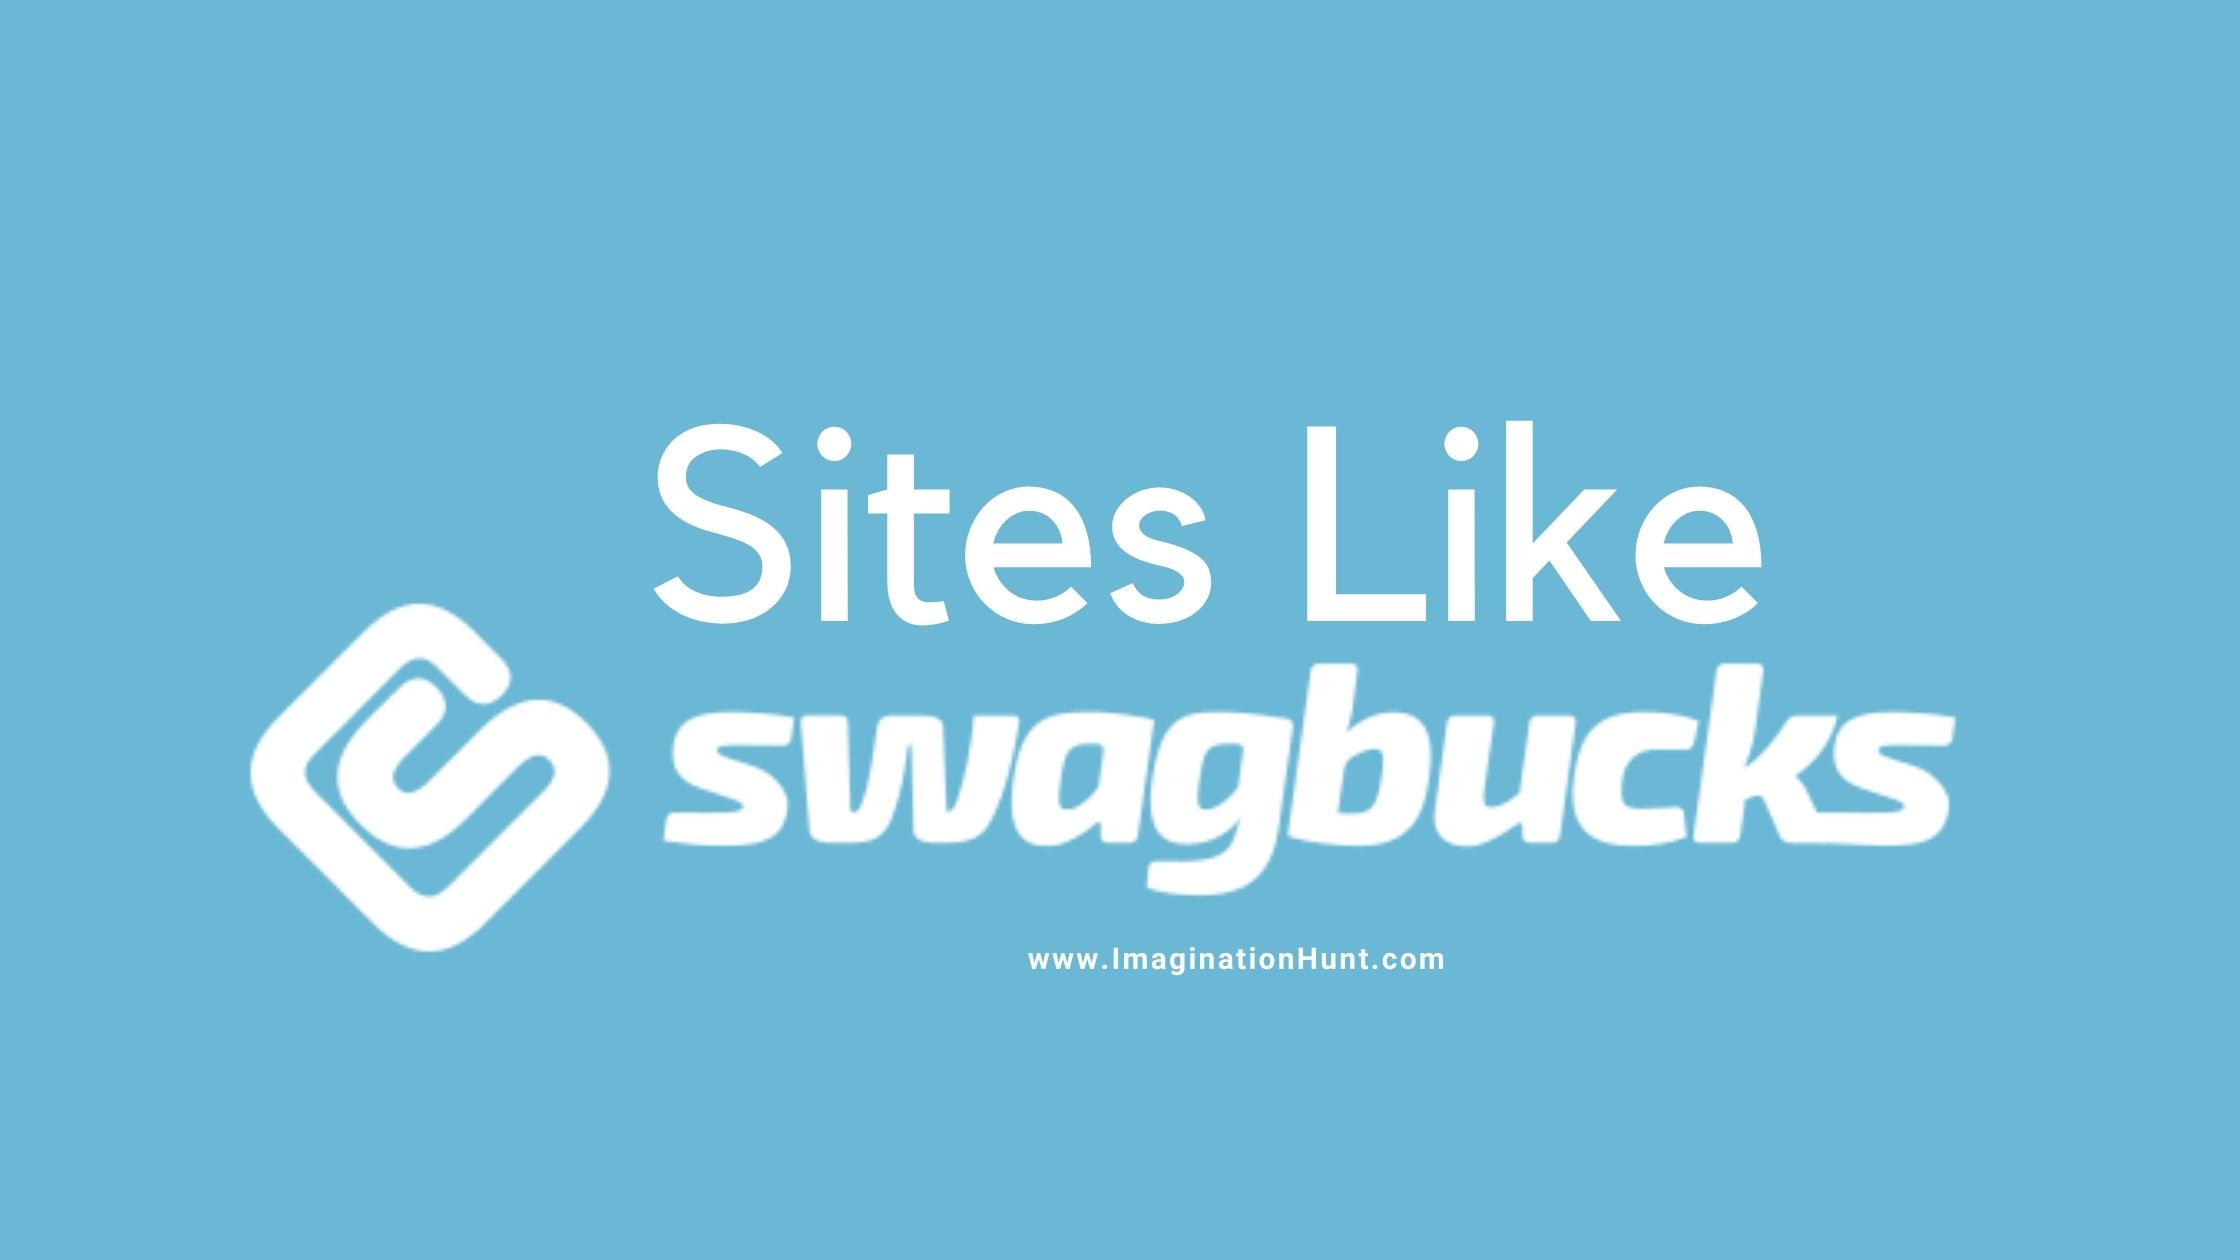 Sites like Swag Bucks